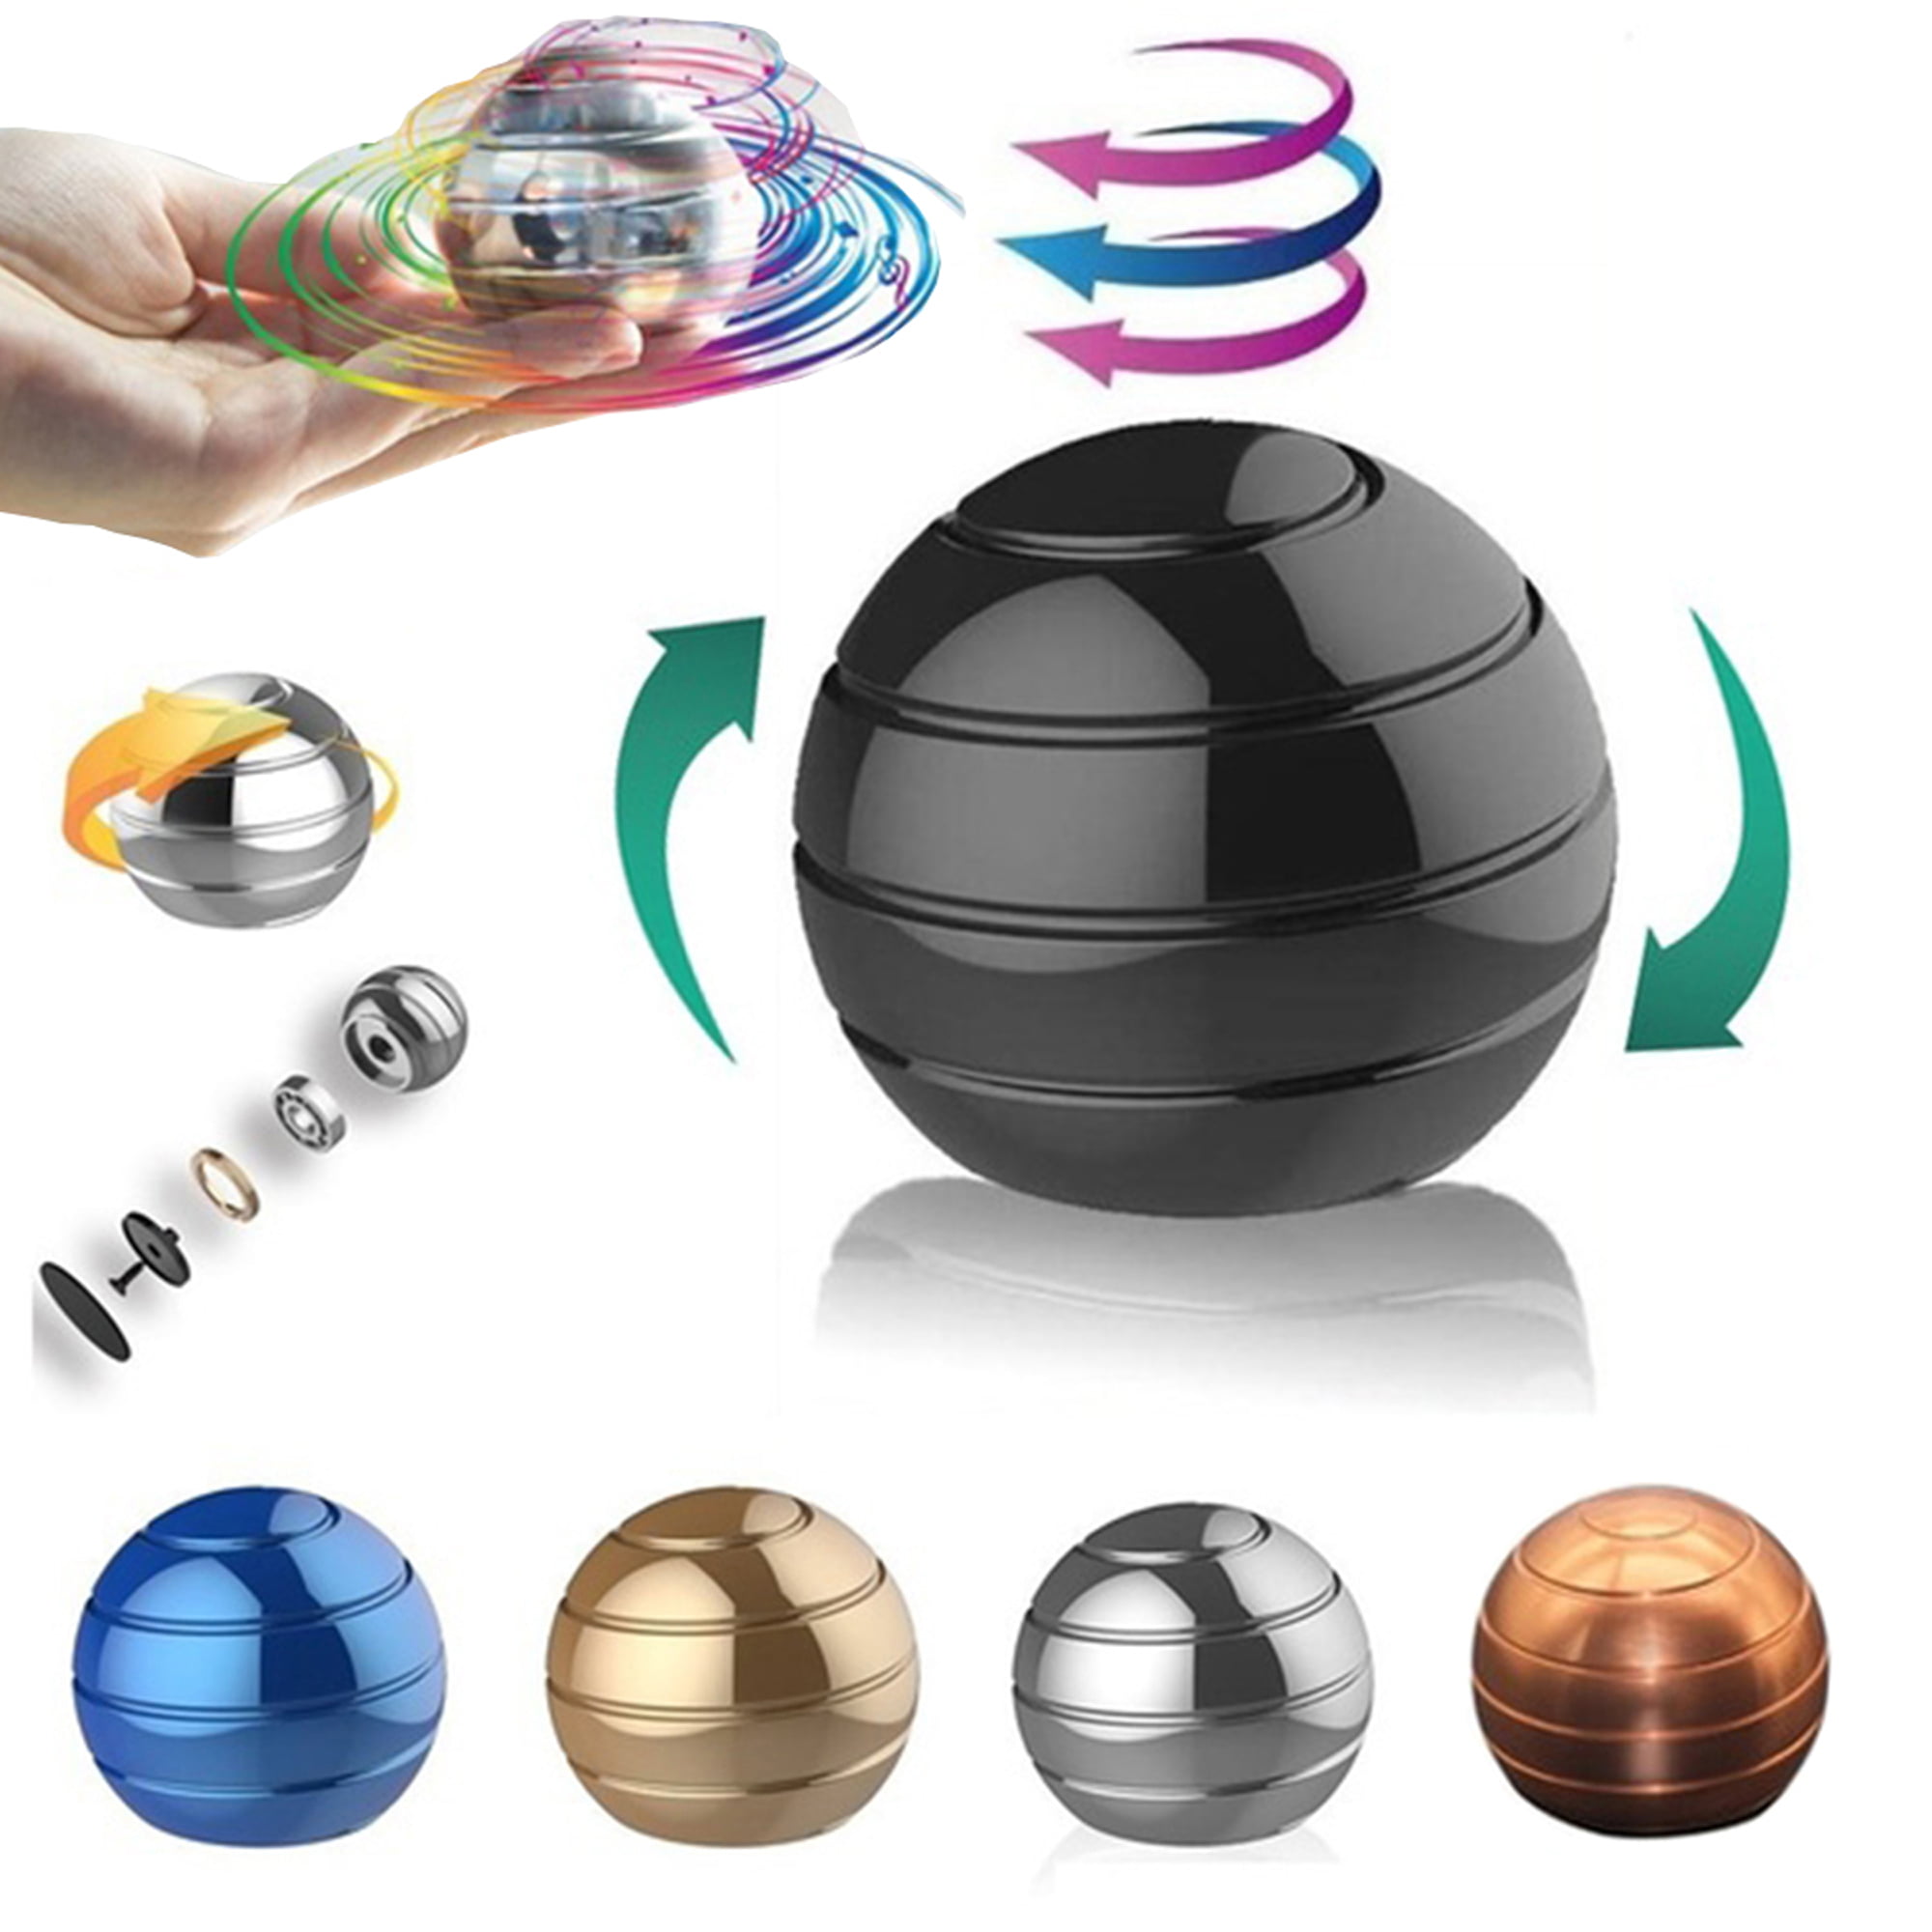 Kinetic Art Ball Spinner Novelty Toys for sale online